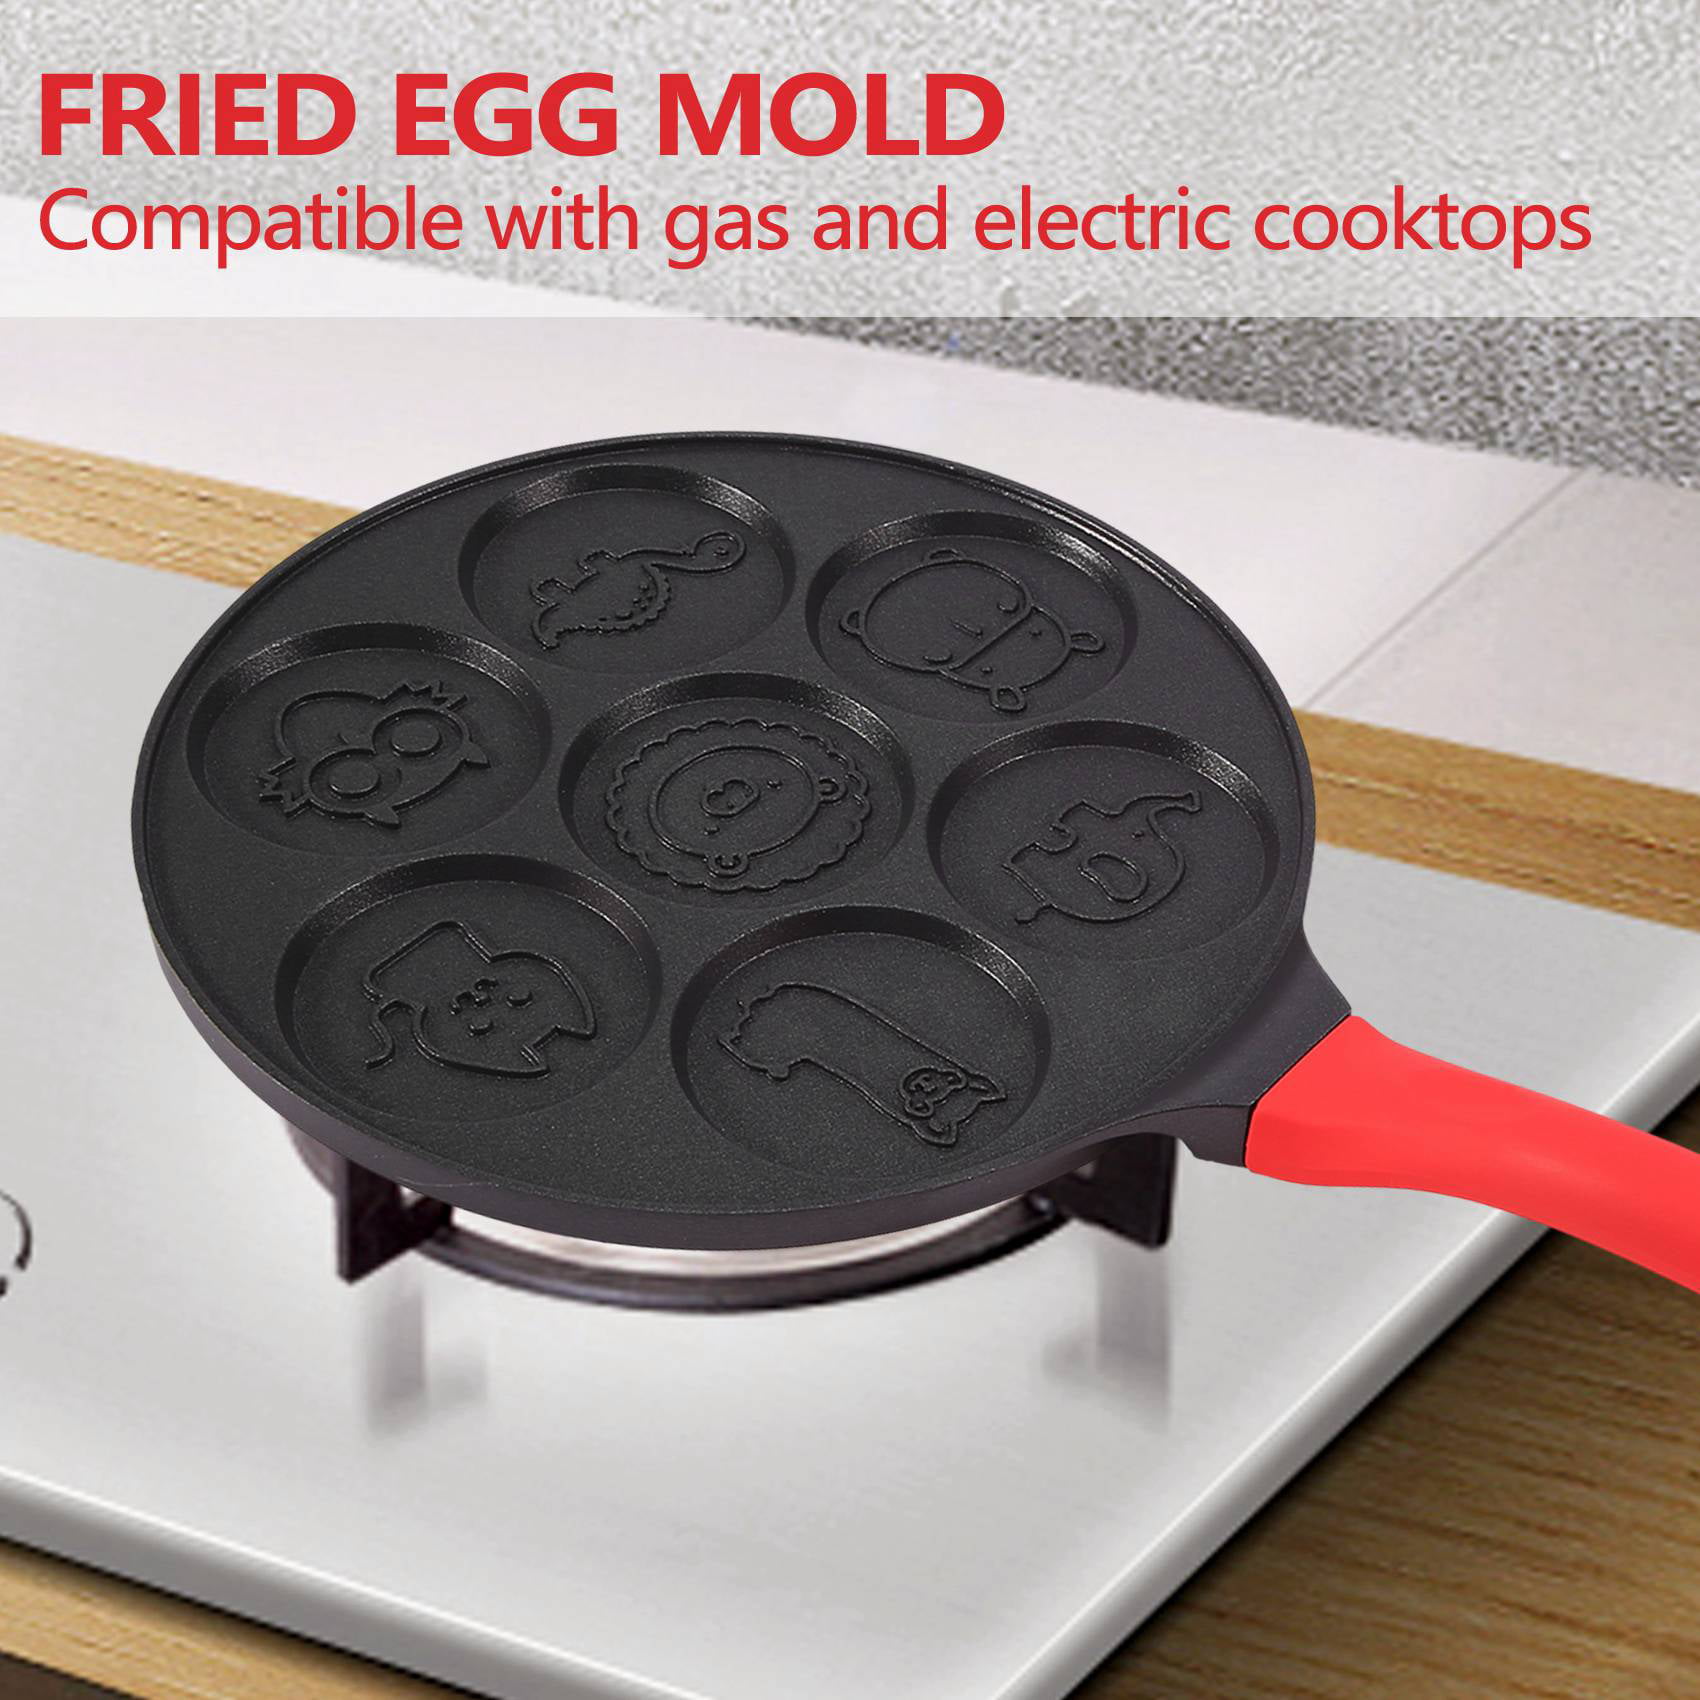  KRETAELY Nonstick Pancake Pan Pancake Griddle With 7-hole  Design Mini Pancake Maker With PFOA Free Coating-black: Home & Kitchen